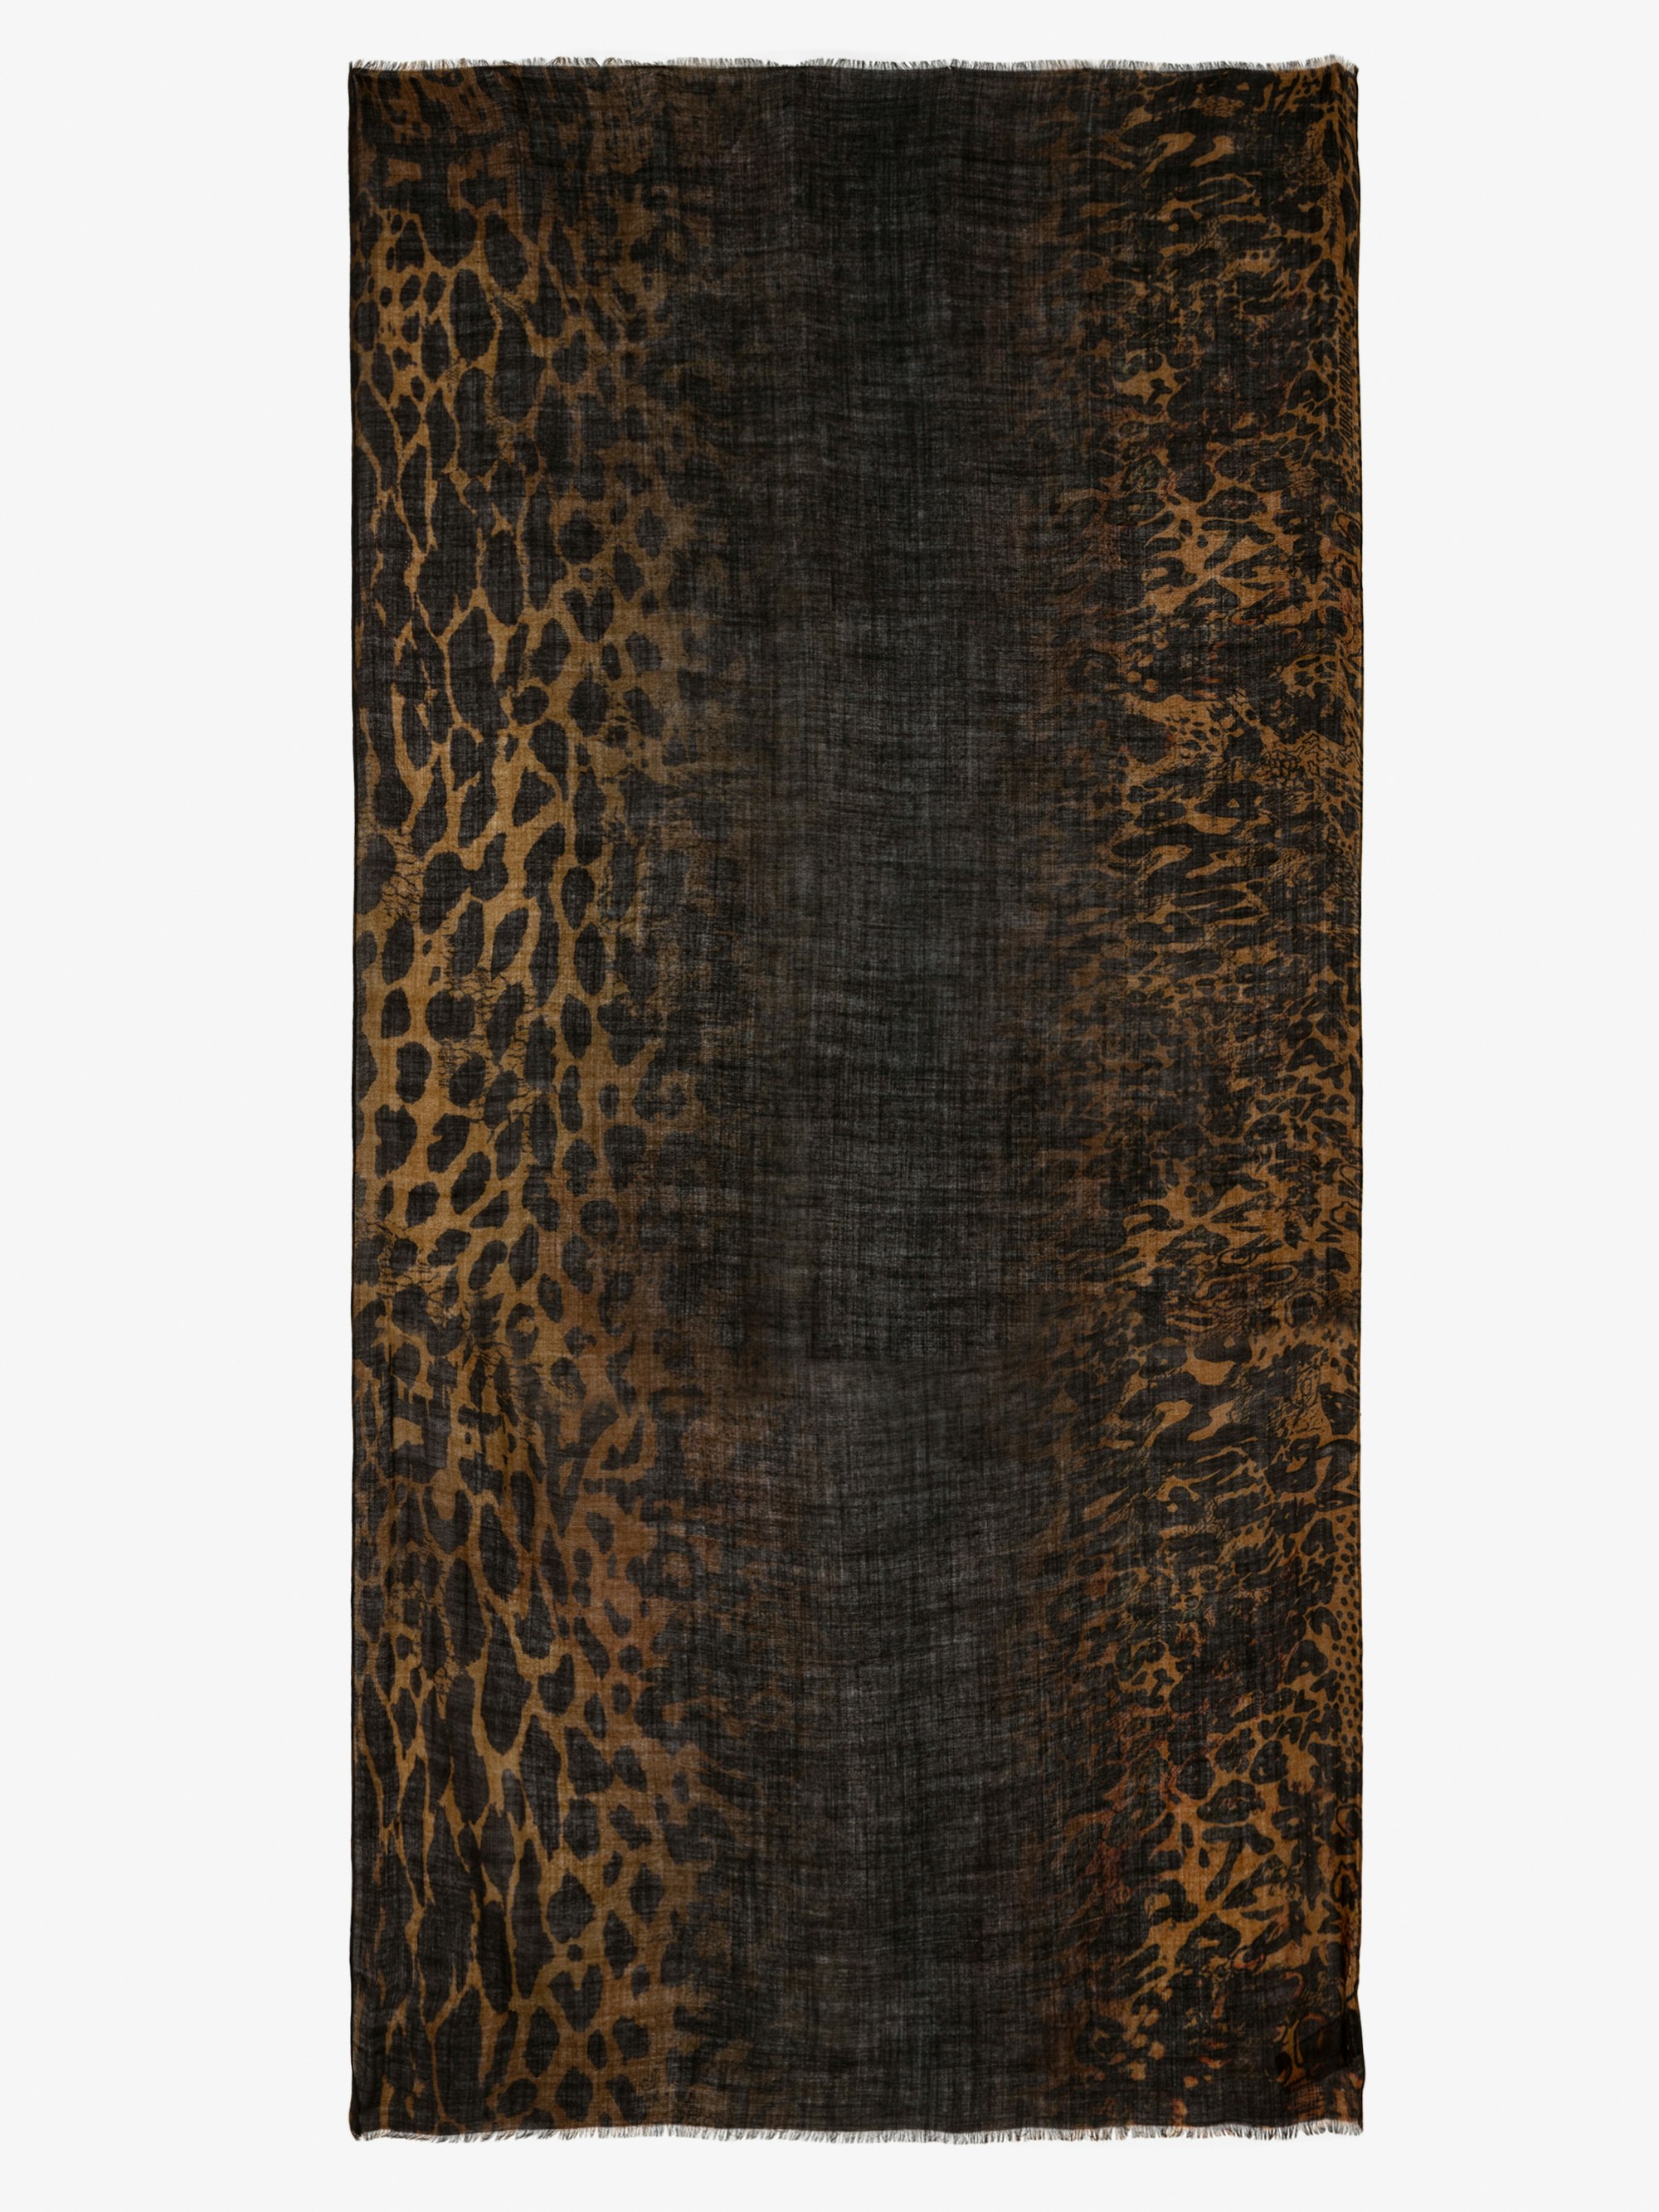 Foulard Judy - Foulard in lana marrone con stampa leopardata effetto tie & dye.